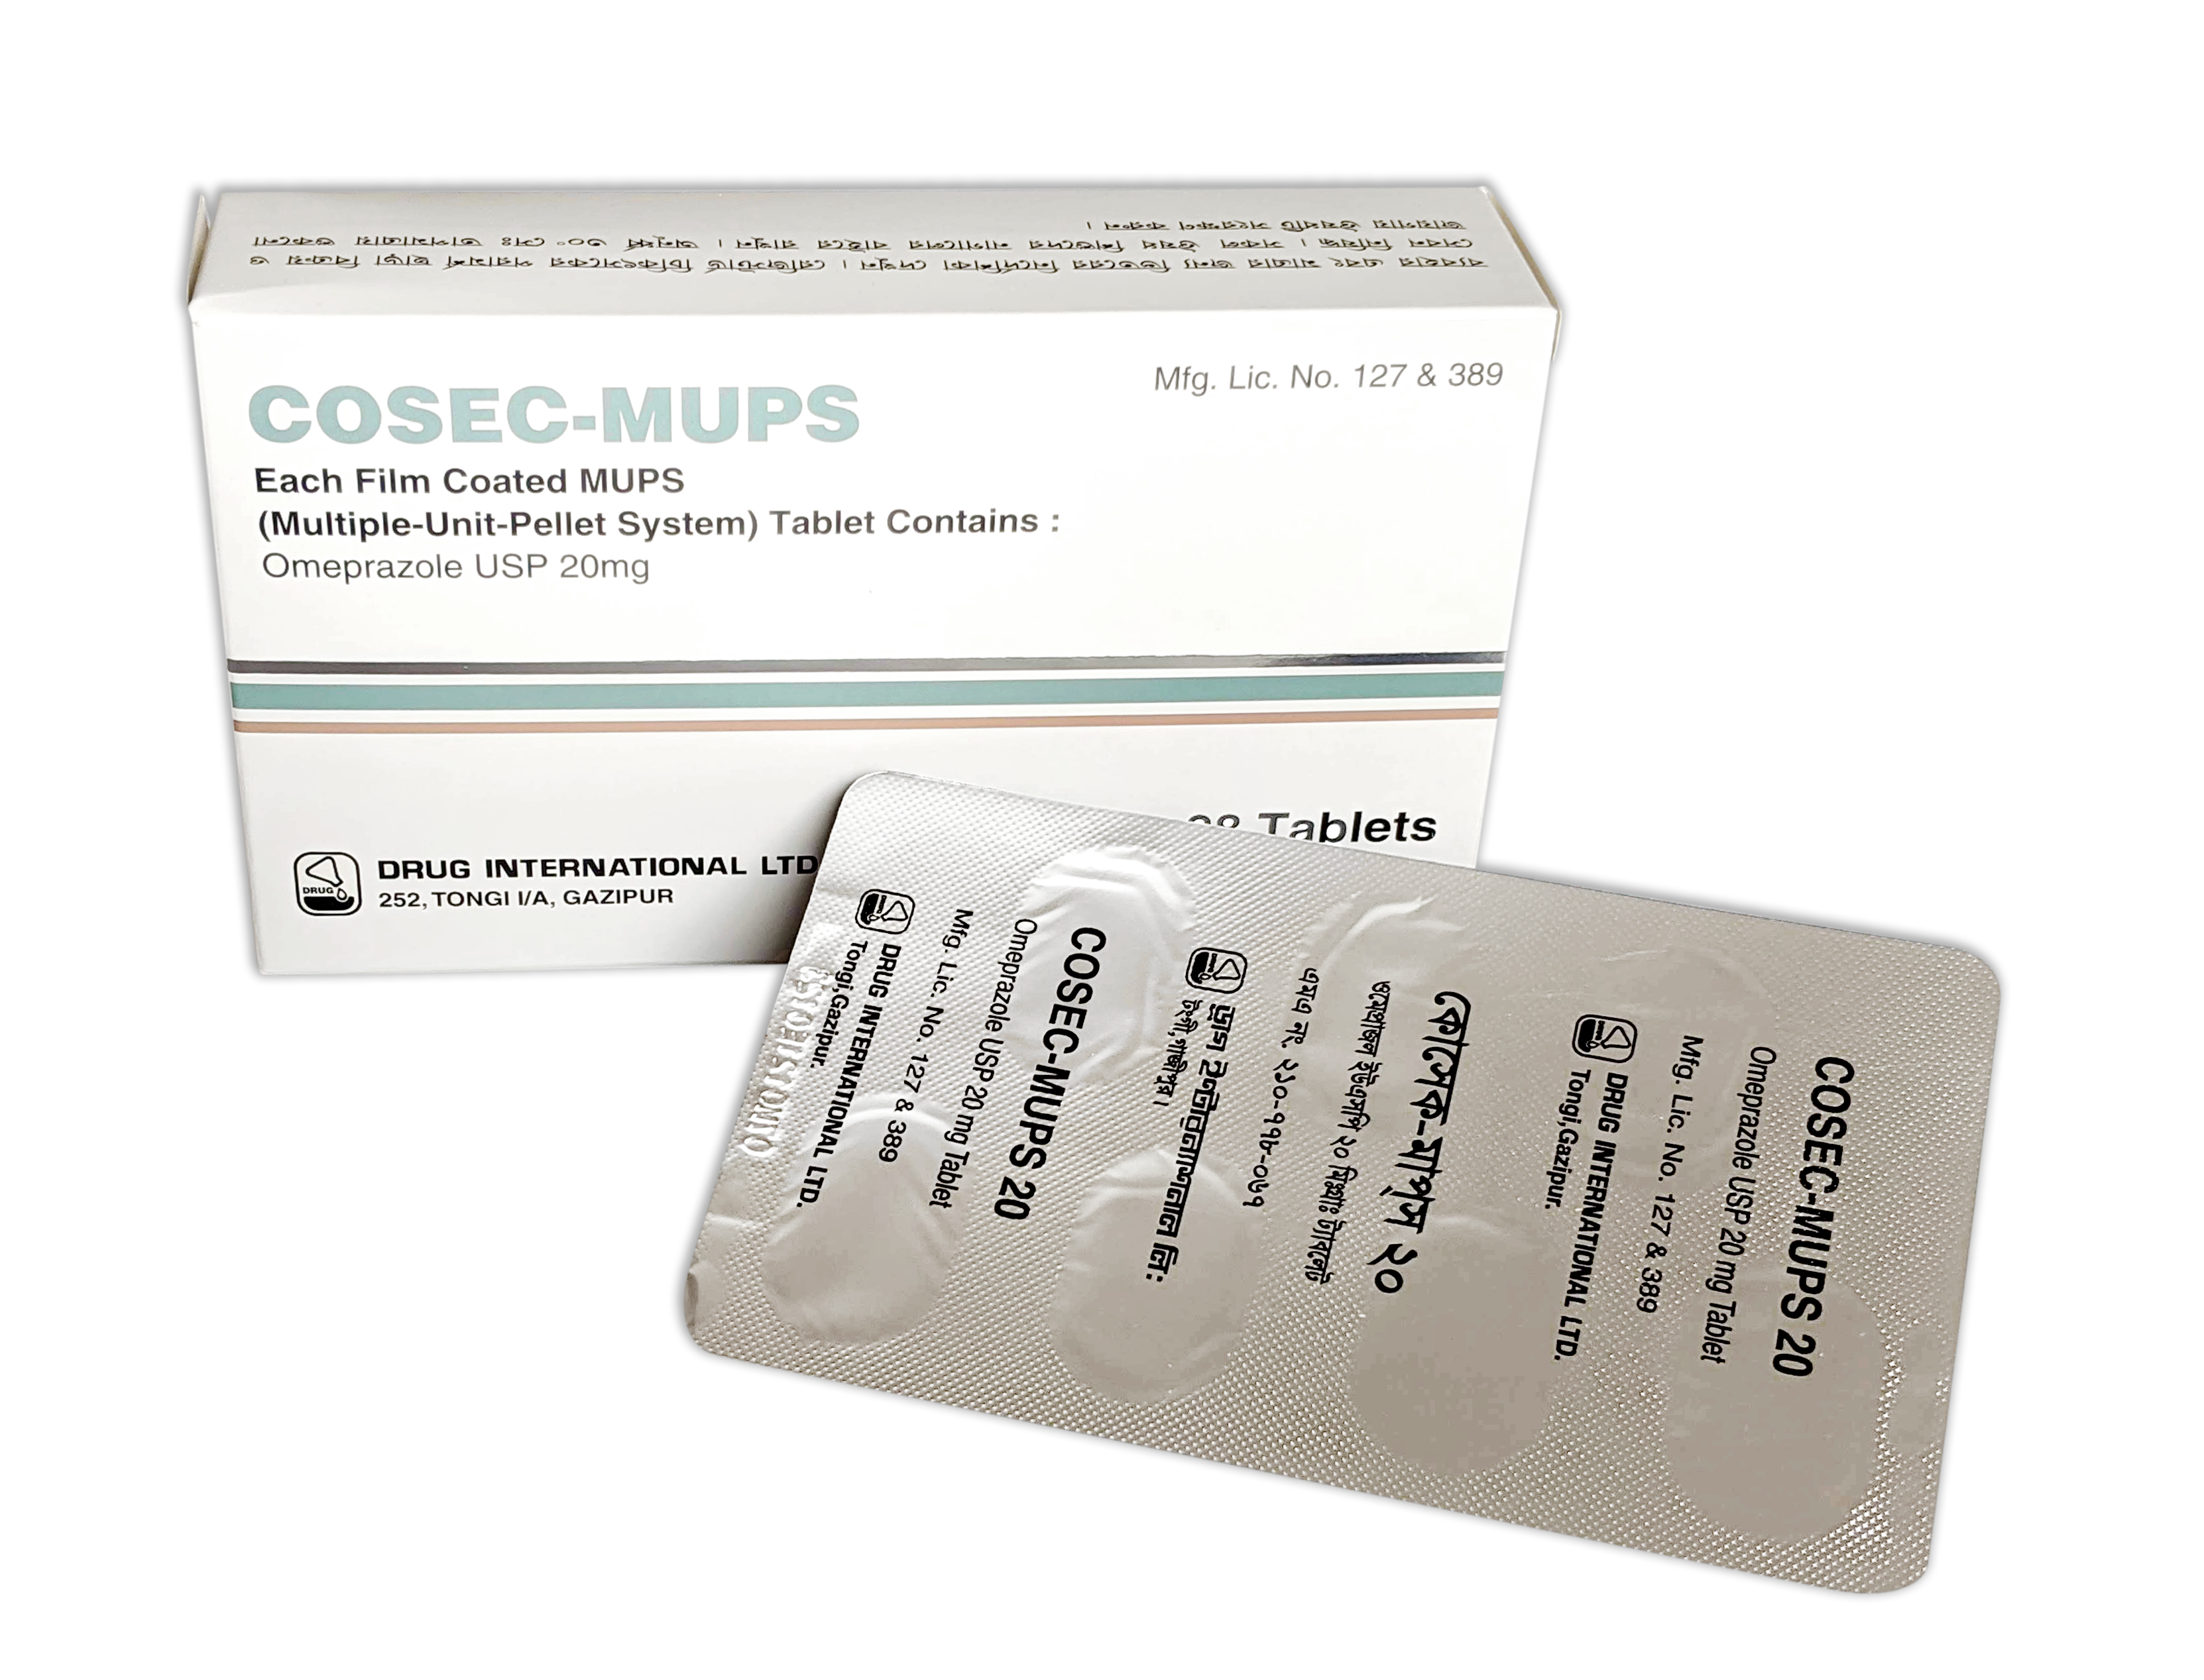 Cosec-MUPS 20 mg Capsule-7's Strip